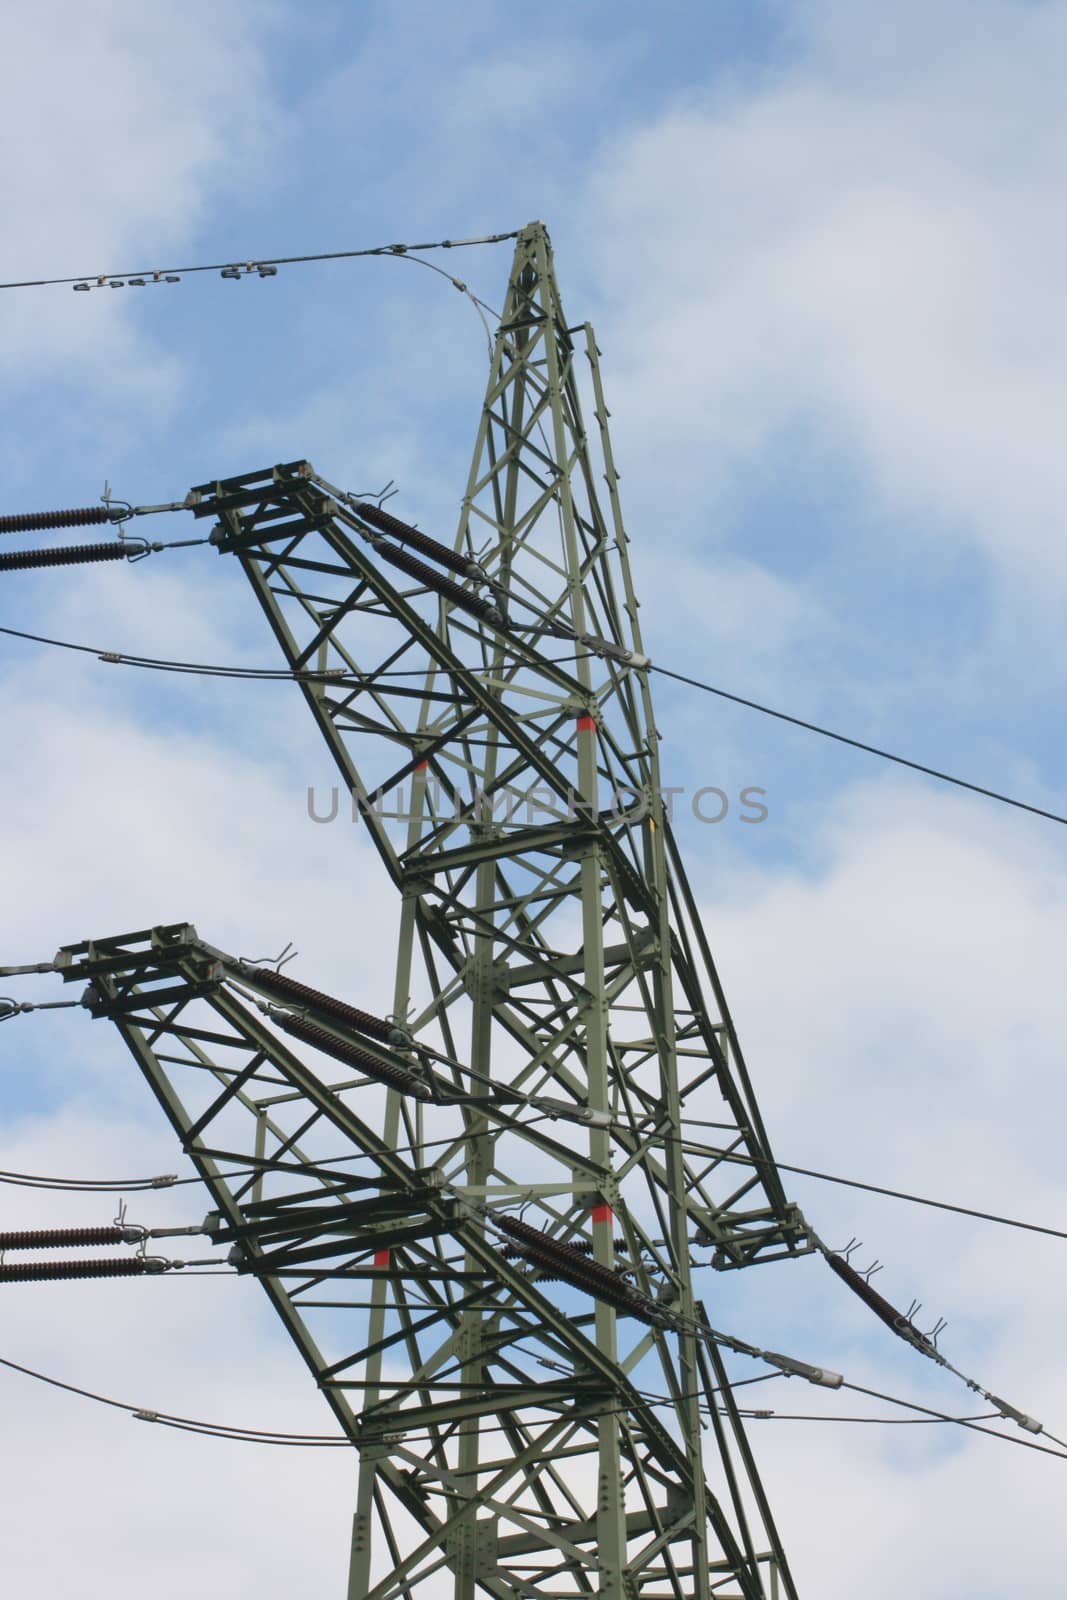 large transmission power pole, with blue sky background       gro�er Fernleitungs Strommast,mit blauen Himmel im Hintergrund